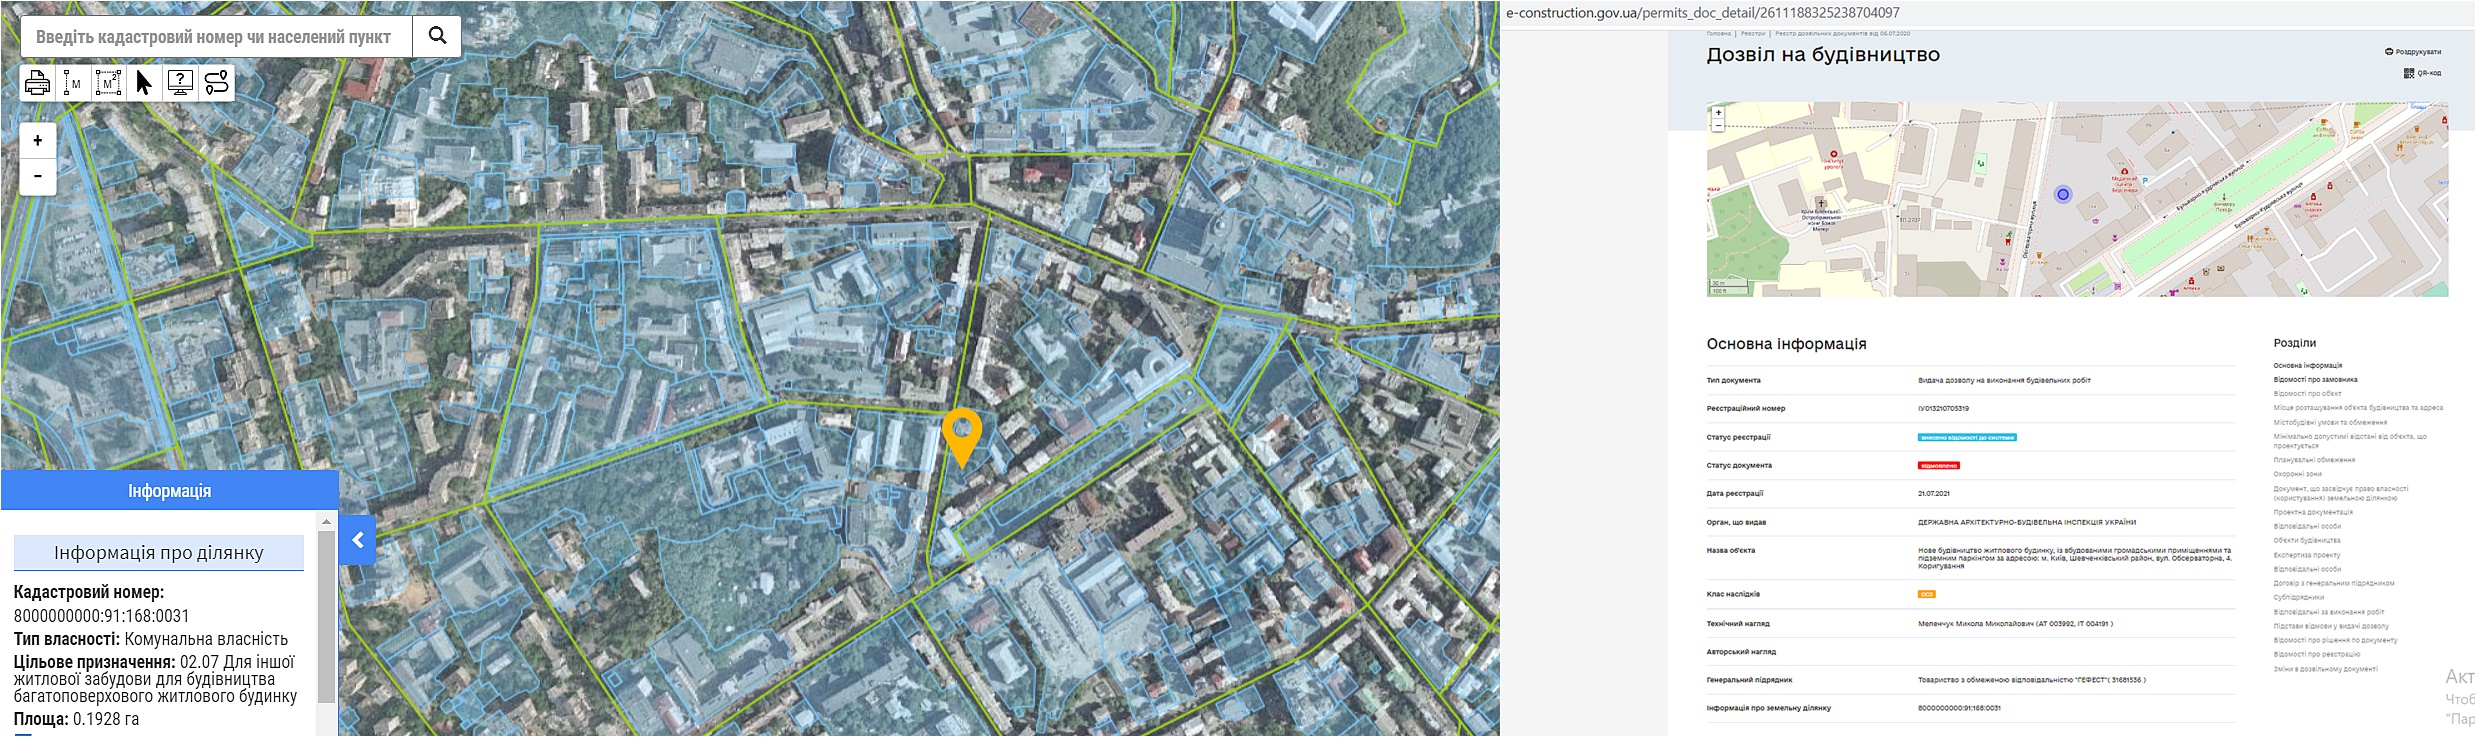 Проект ЖК по ул. Обсерваторная, 4 данные кадастра и разрешение на строительство